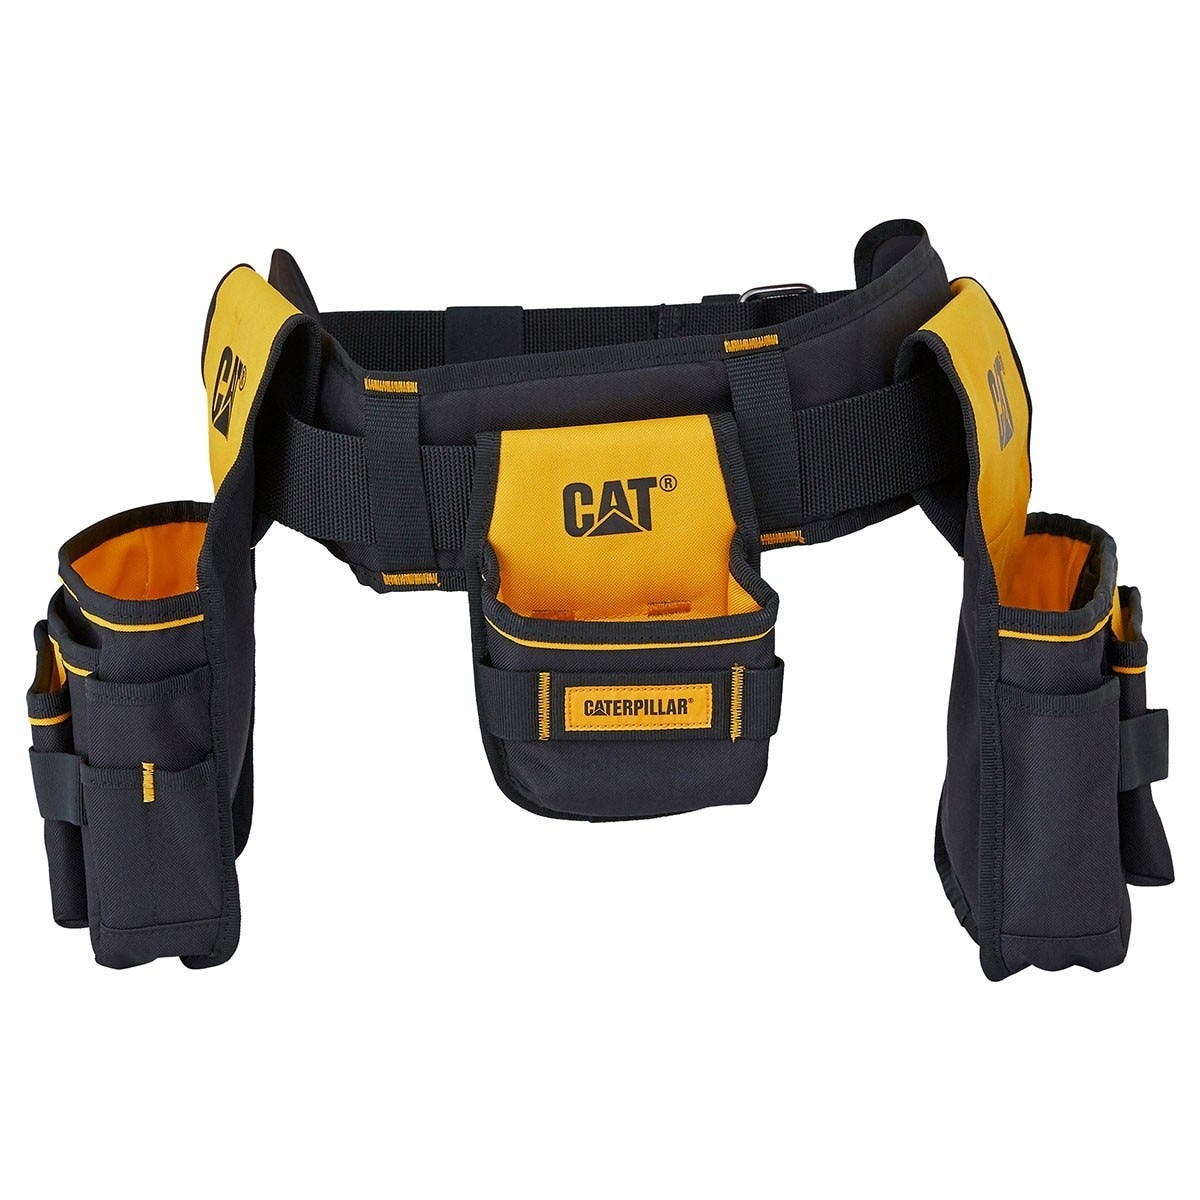 Porte outils professionnel ceinture bricolage Caterpillar Sangle rembourée  3 poches Taille réglable